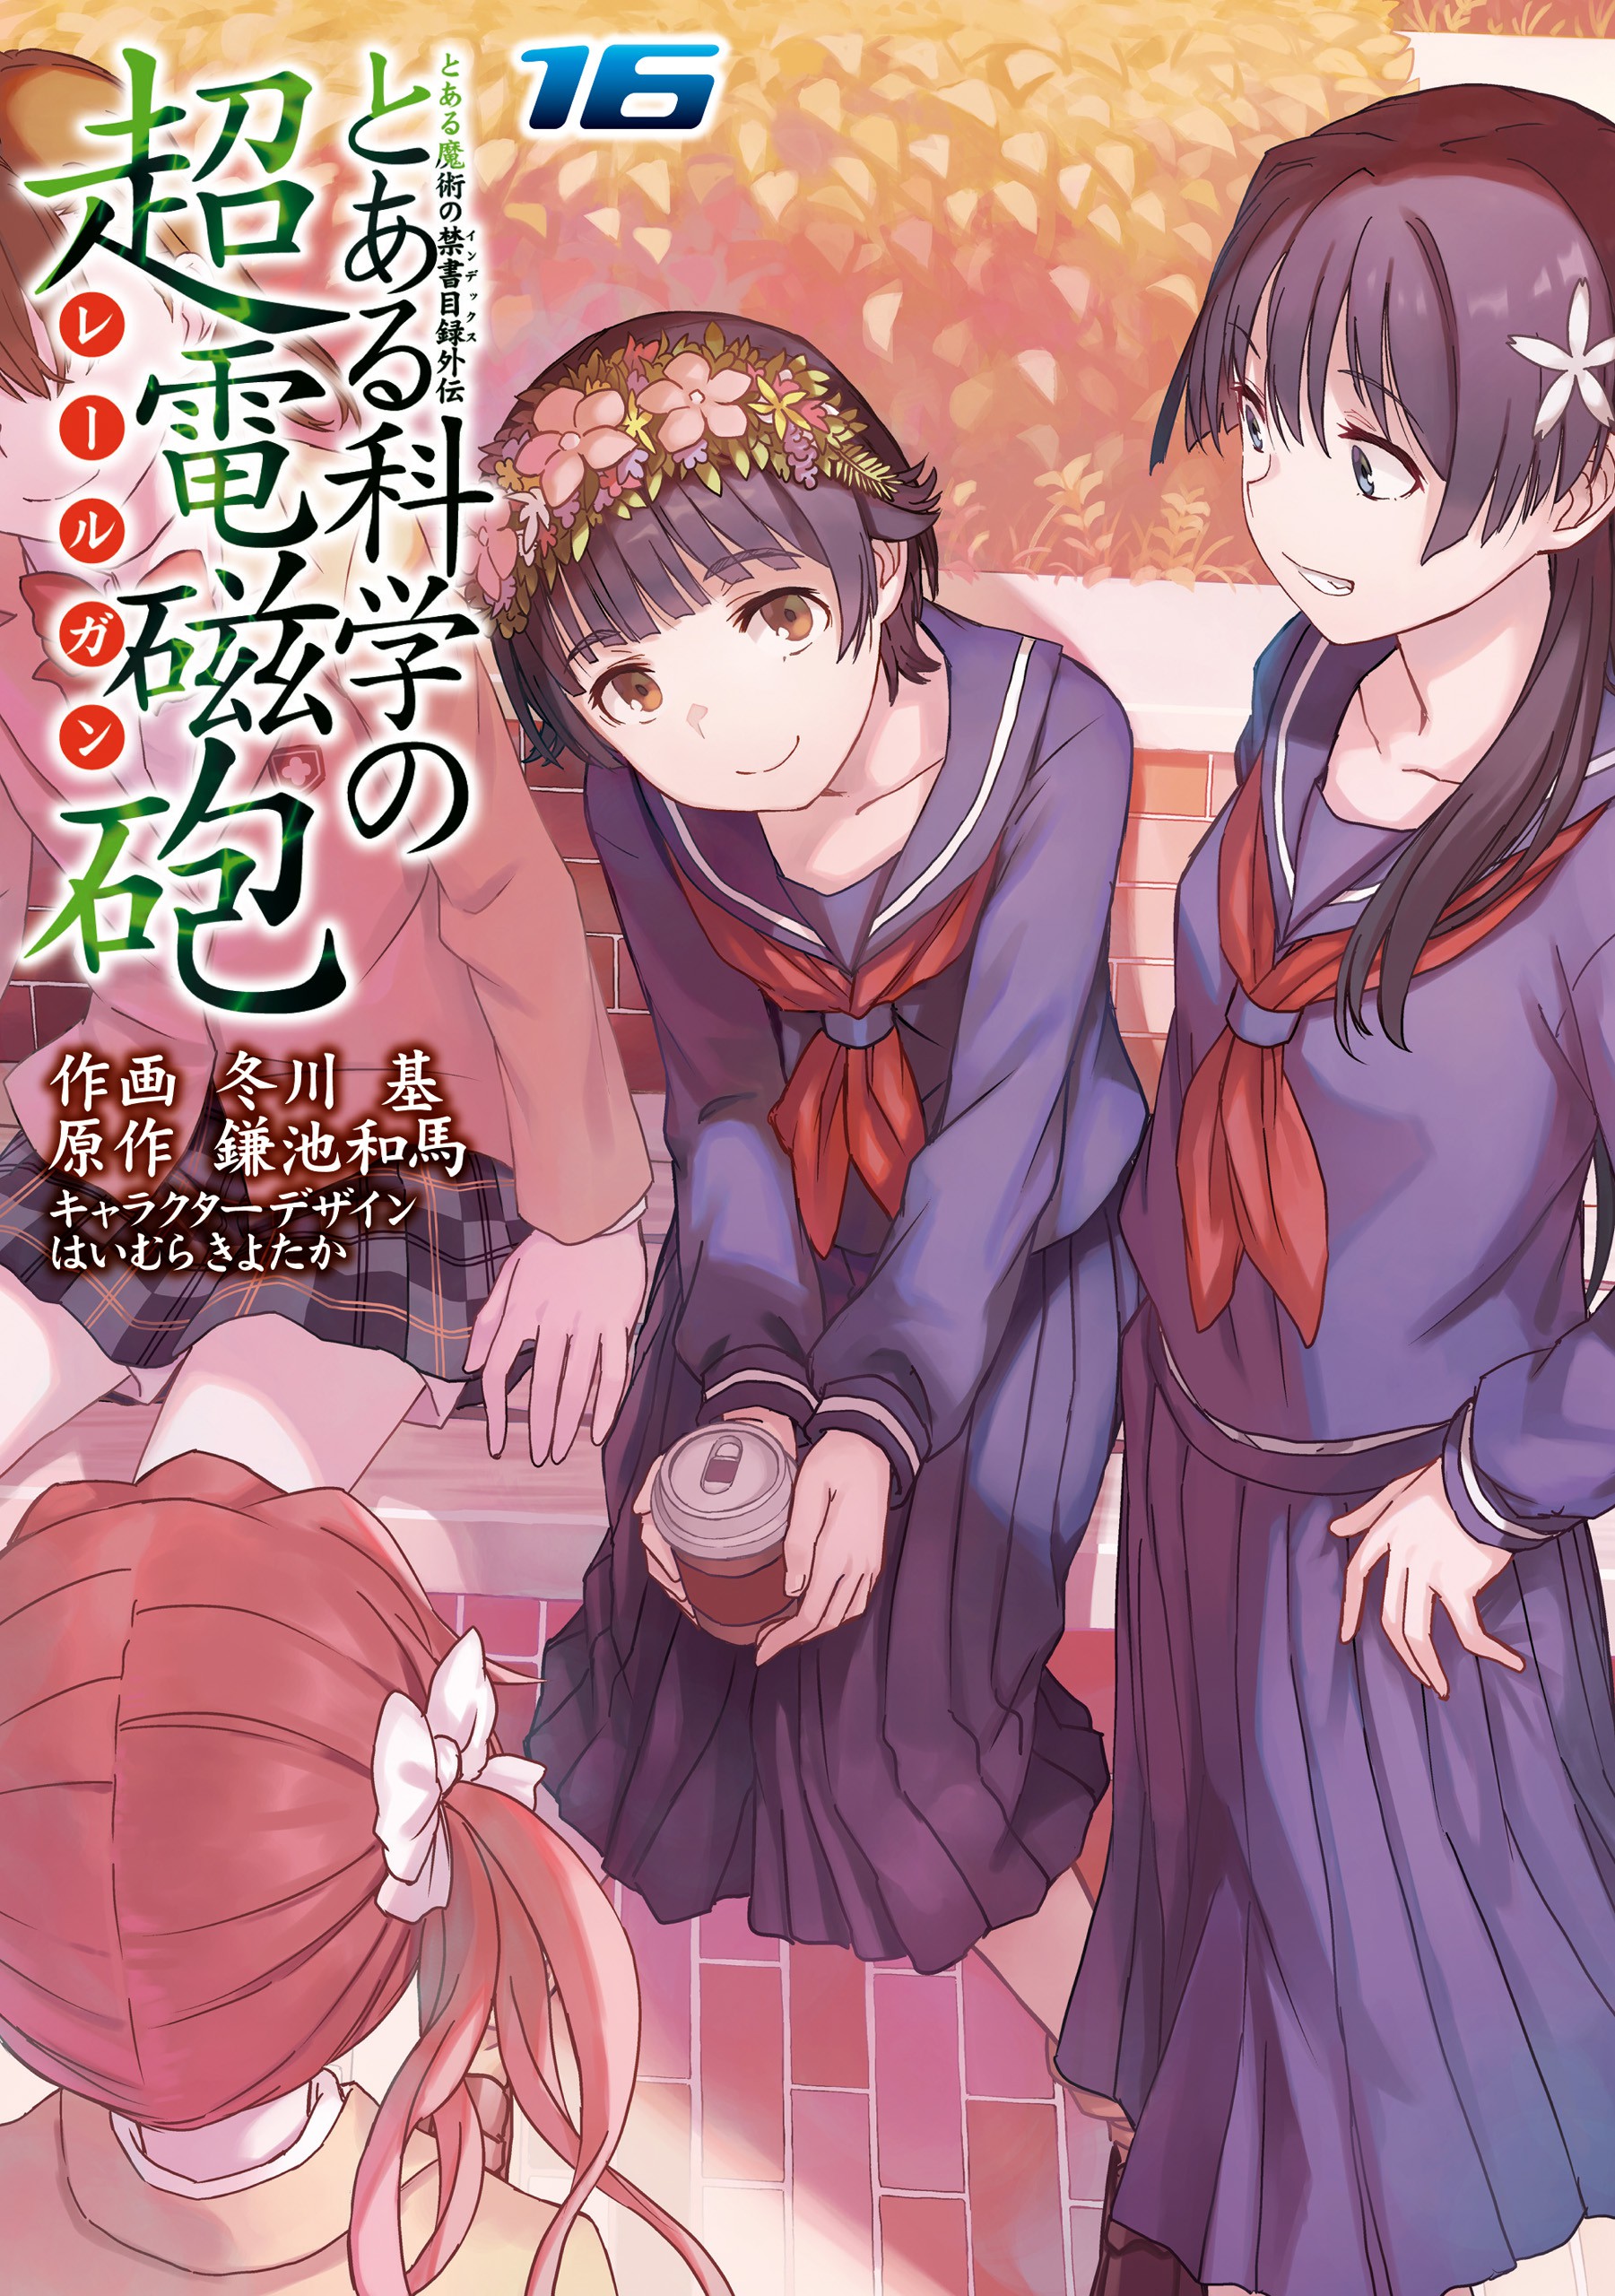 Kagaku Manga Survival, obra de educação virará anime!